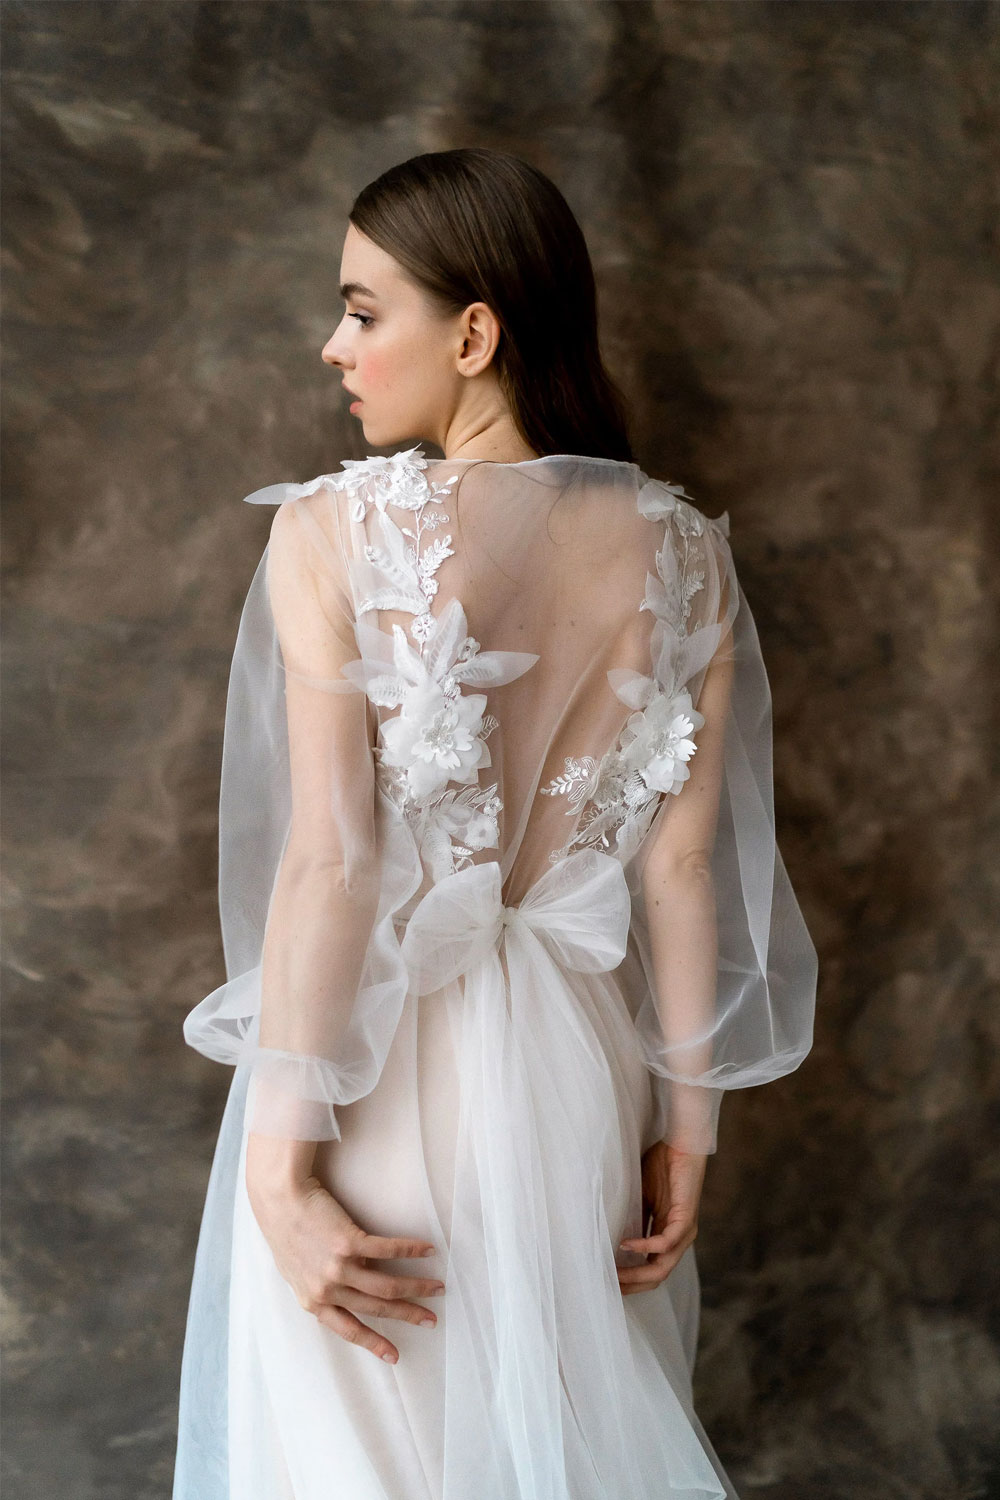 Embellished wedding dress with tulle bow by Boudoirweddingshop on Etsy